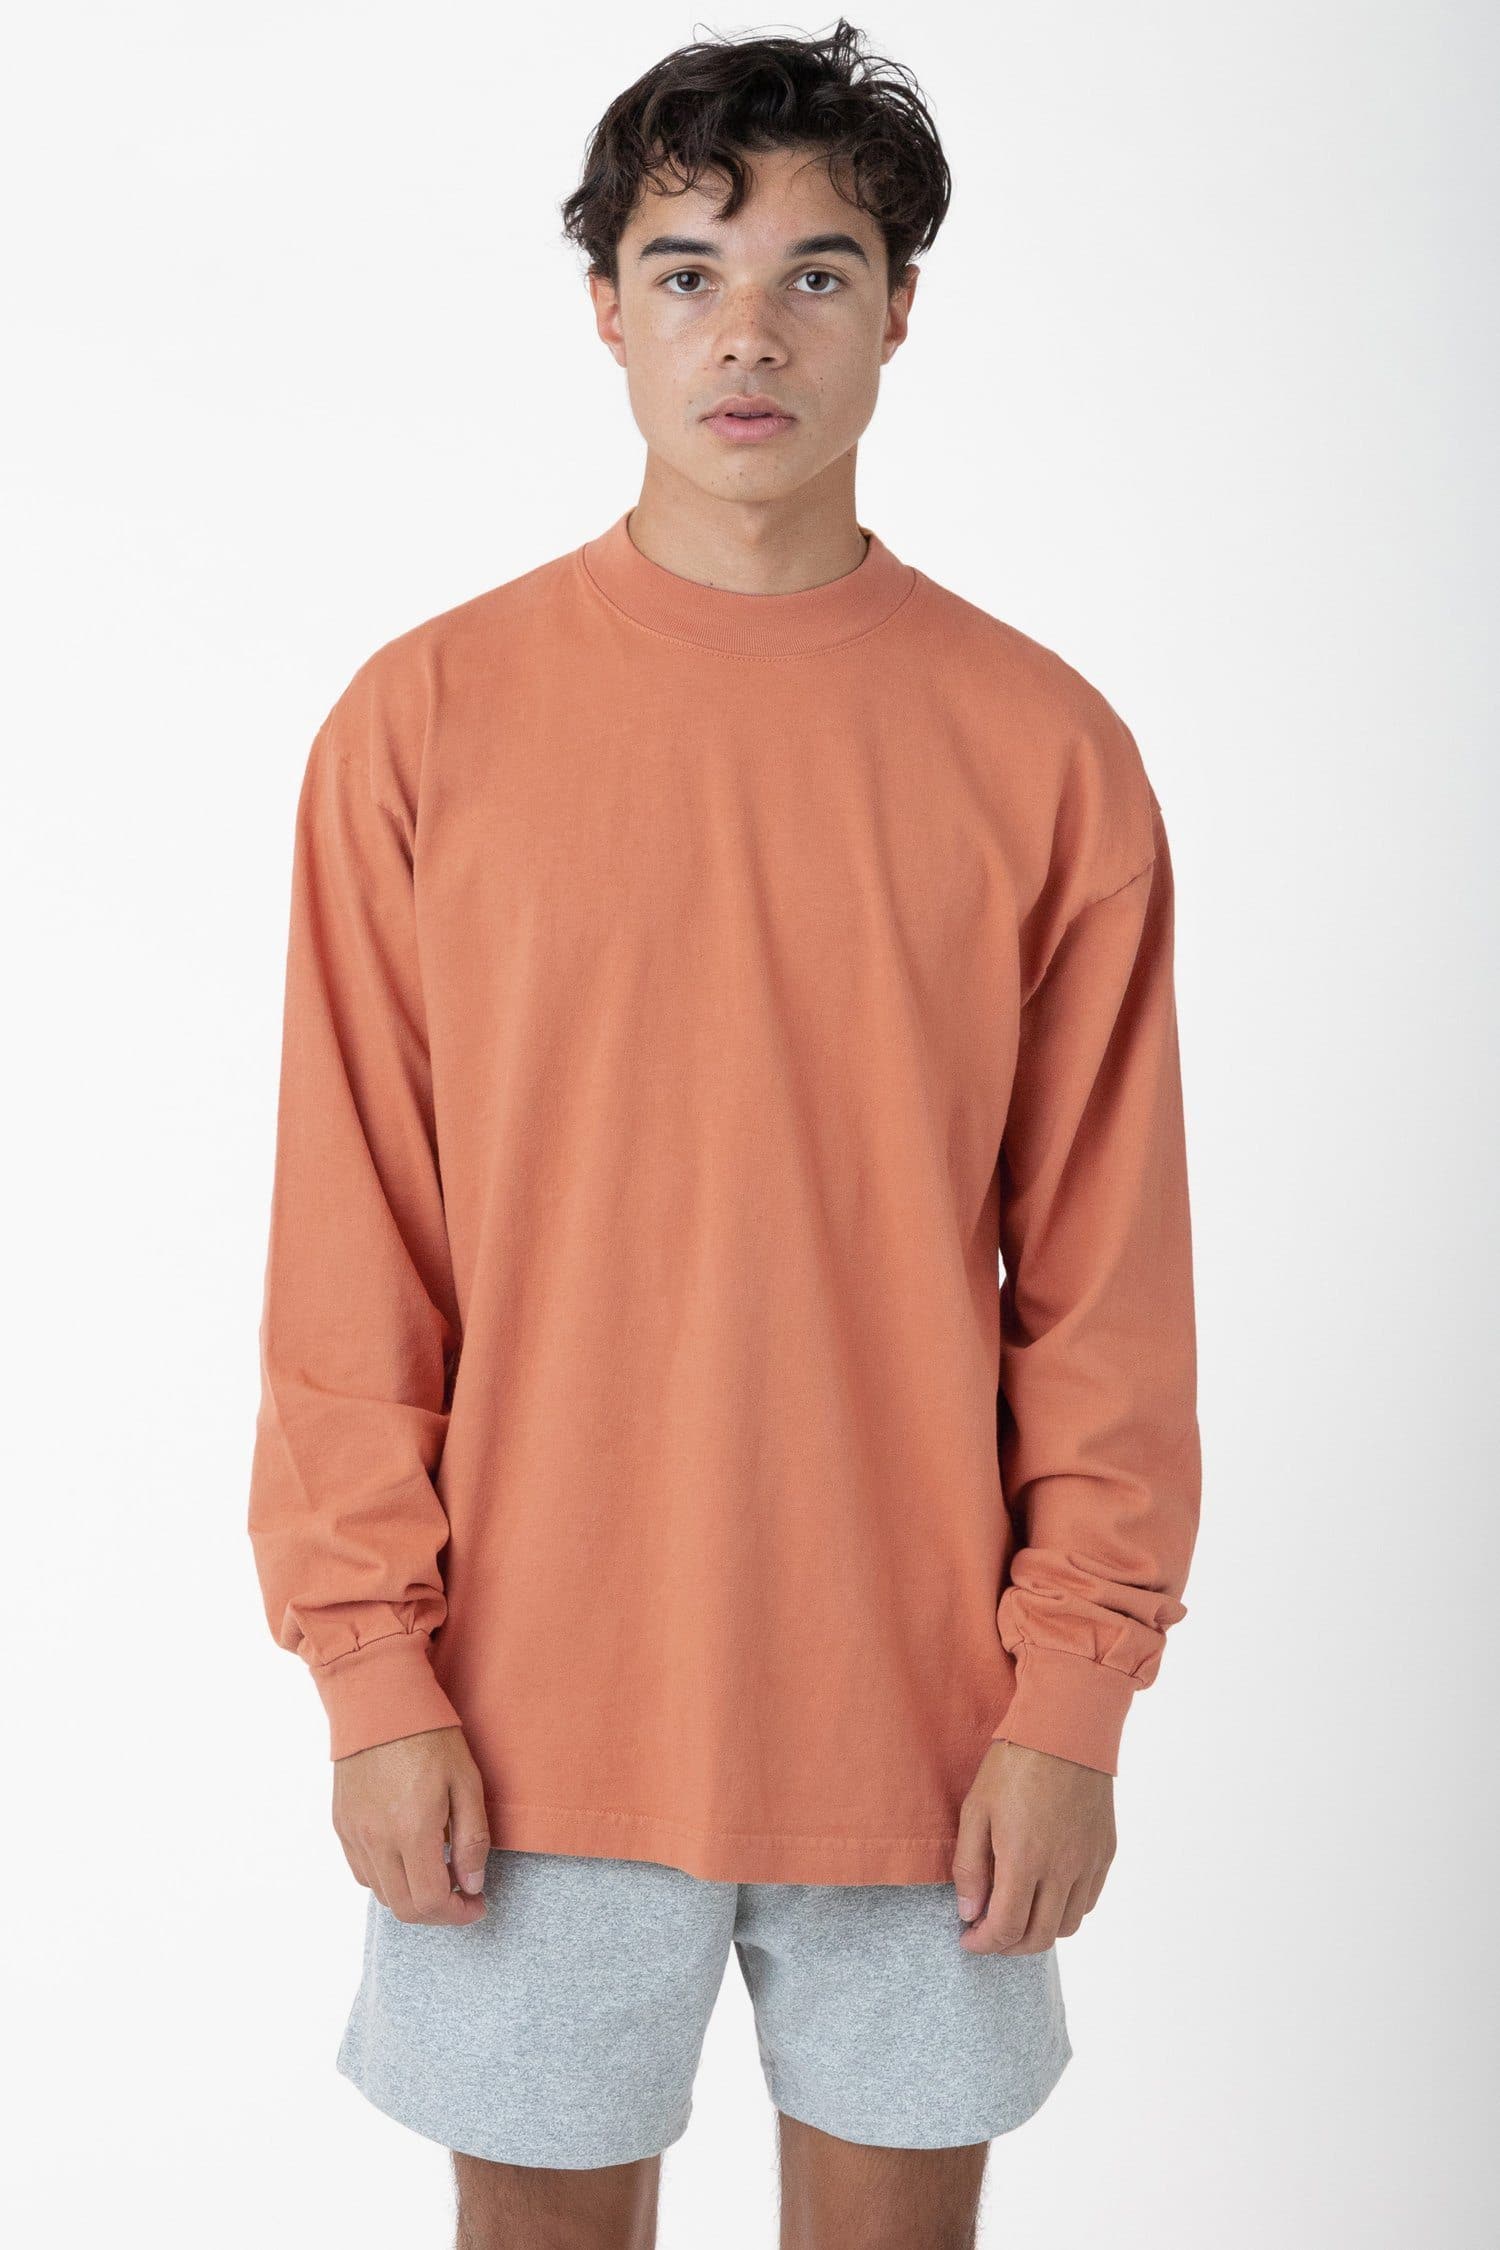 Defekt klog markør 1406GD - Long Sleeve Garment Dye Mockneck T-Shirt – Los Angeles Apparel